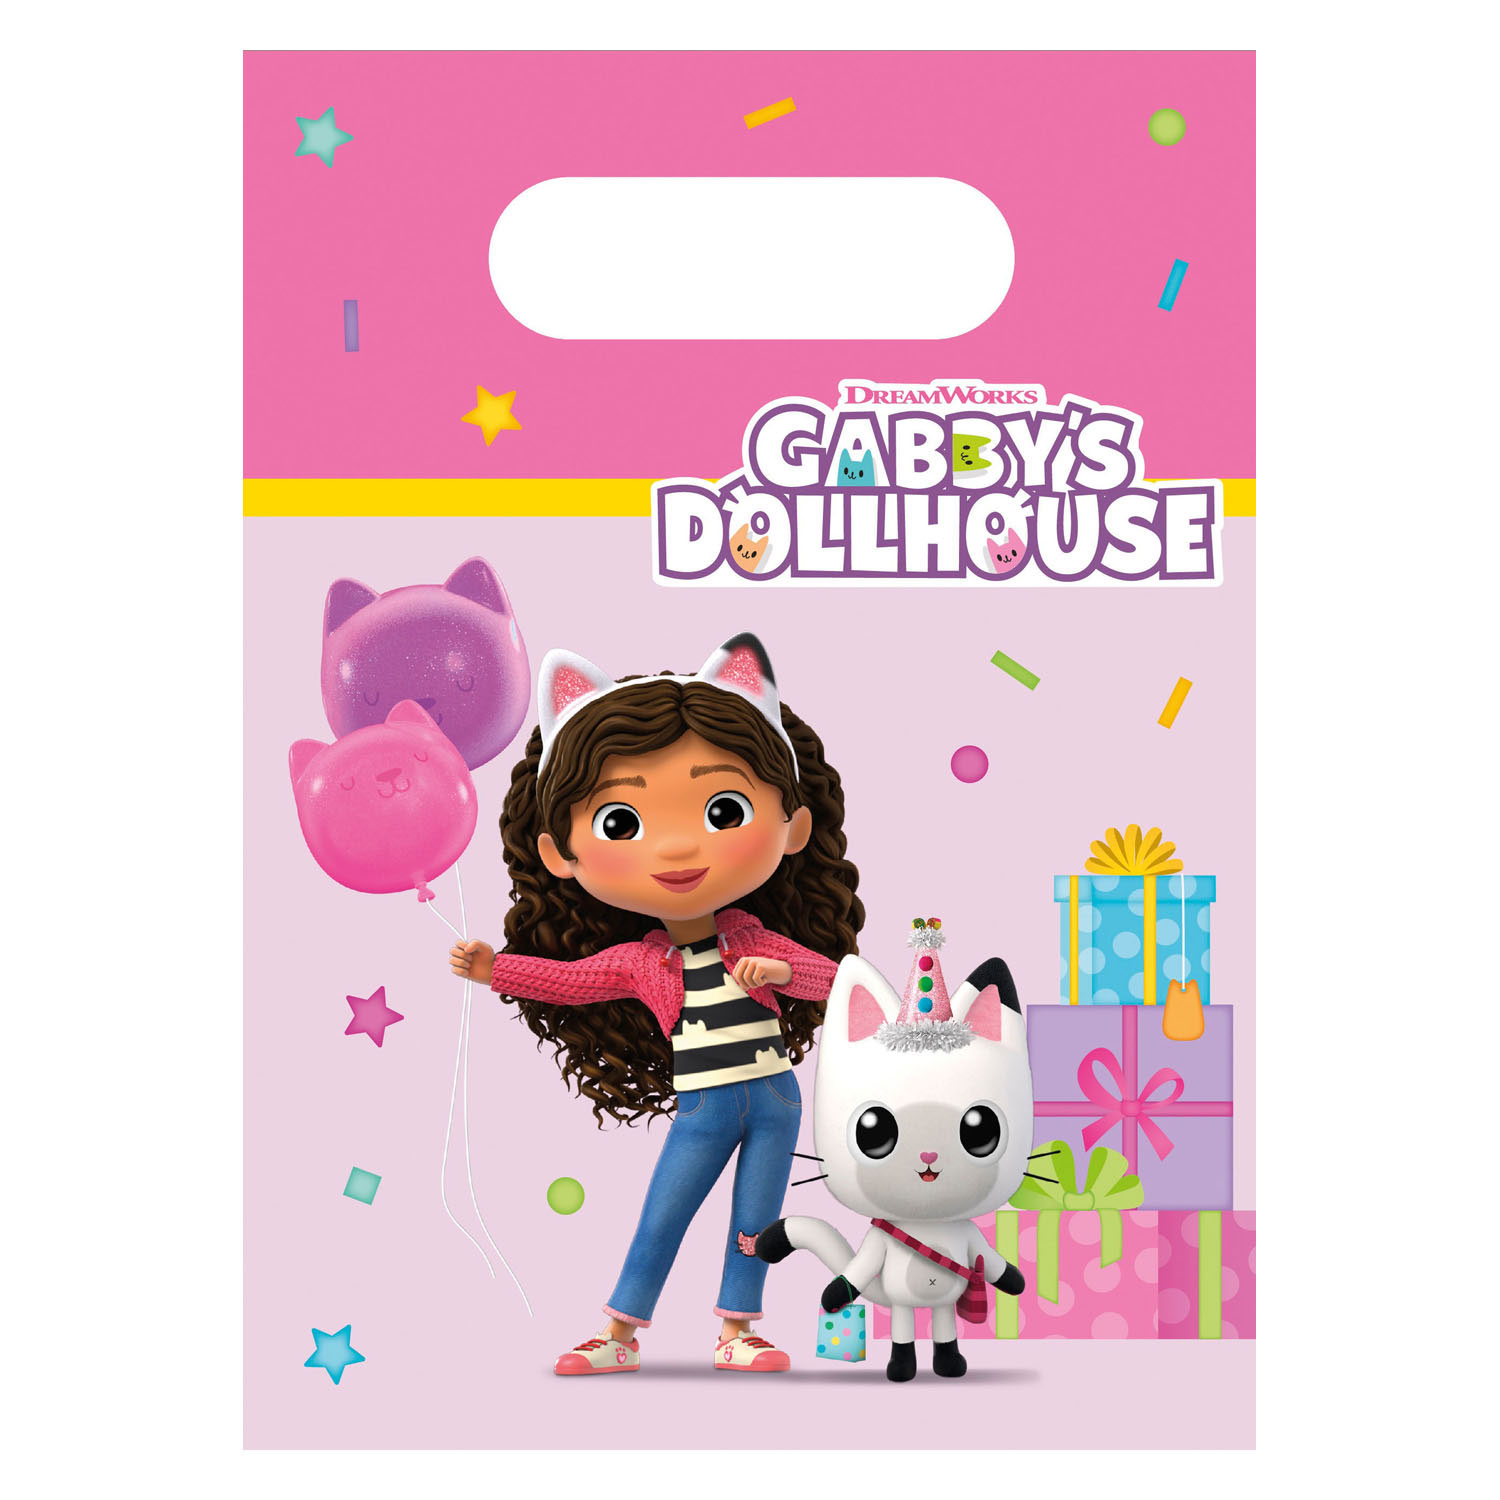 Acheter Oeuf surprise de la maison de poupée de Gabby en ligne?